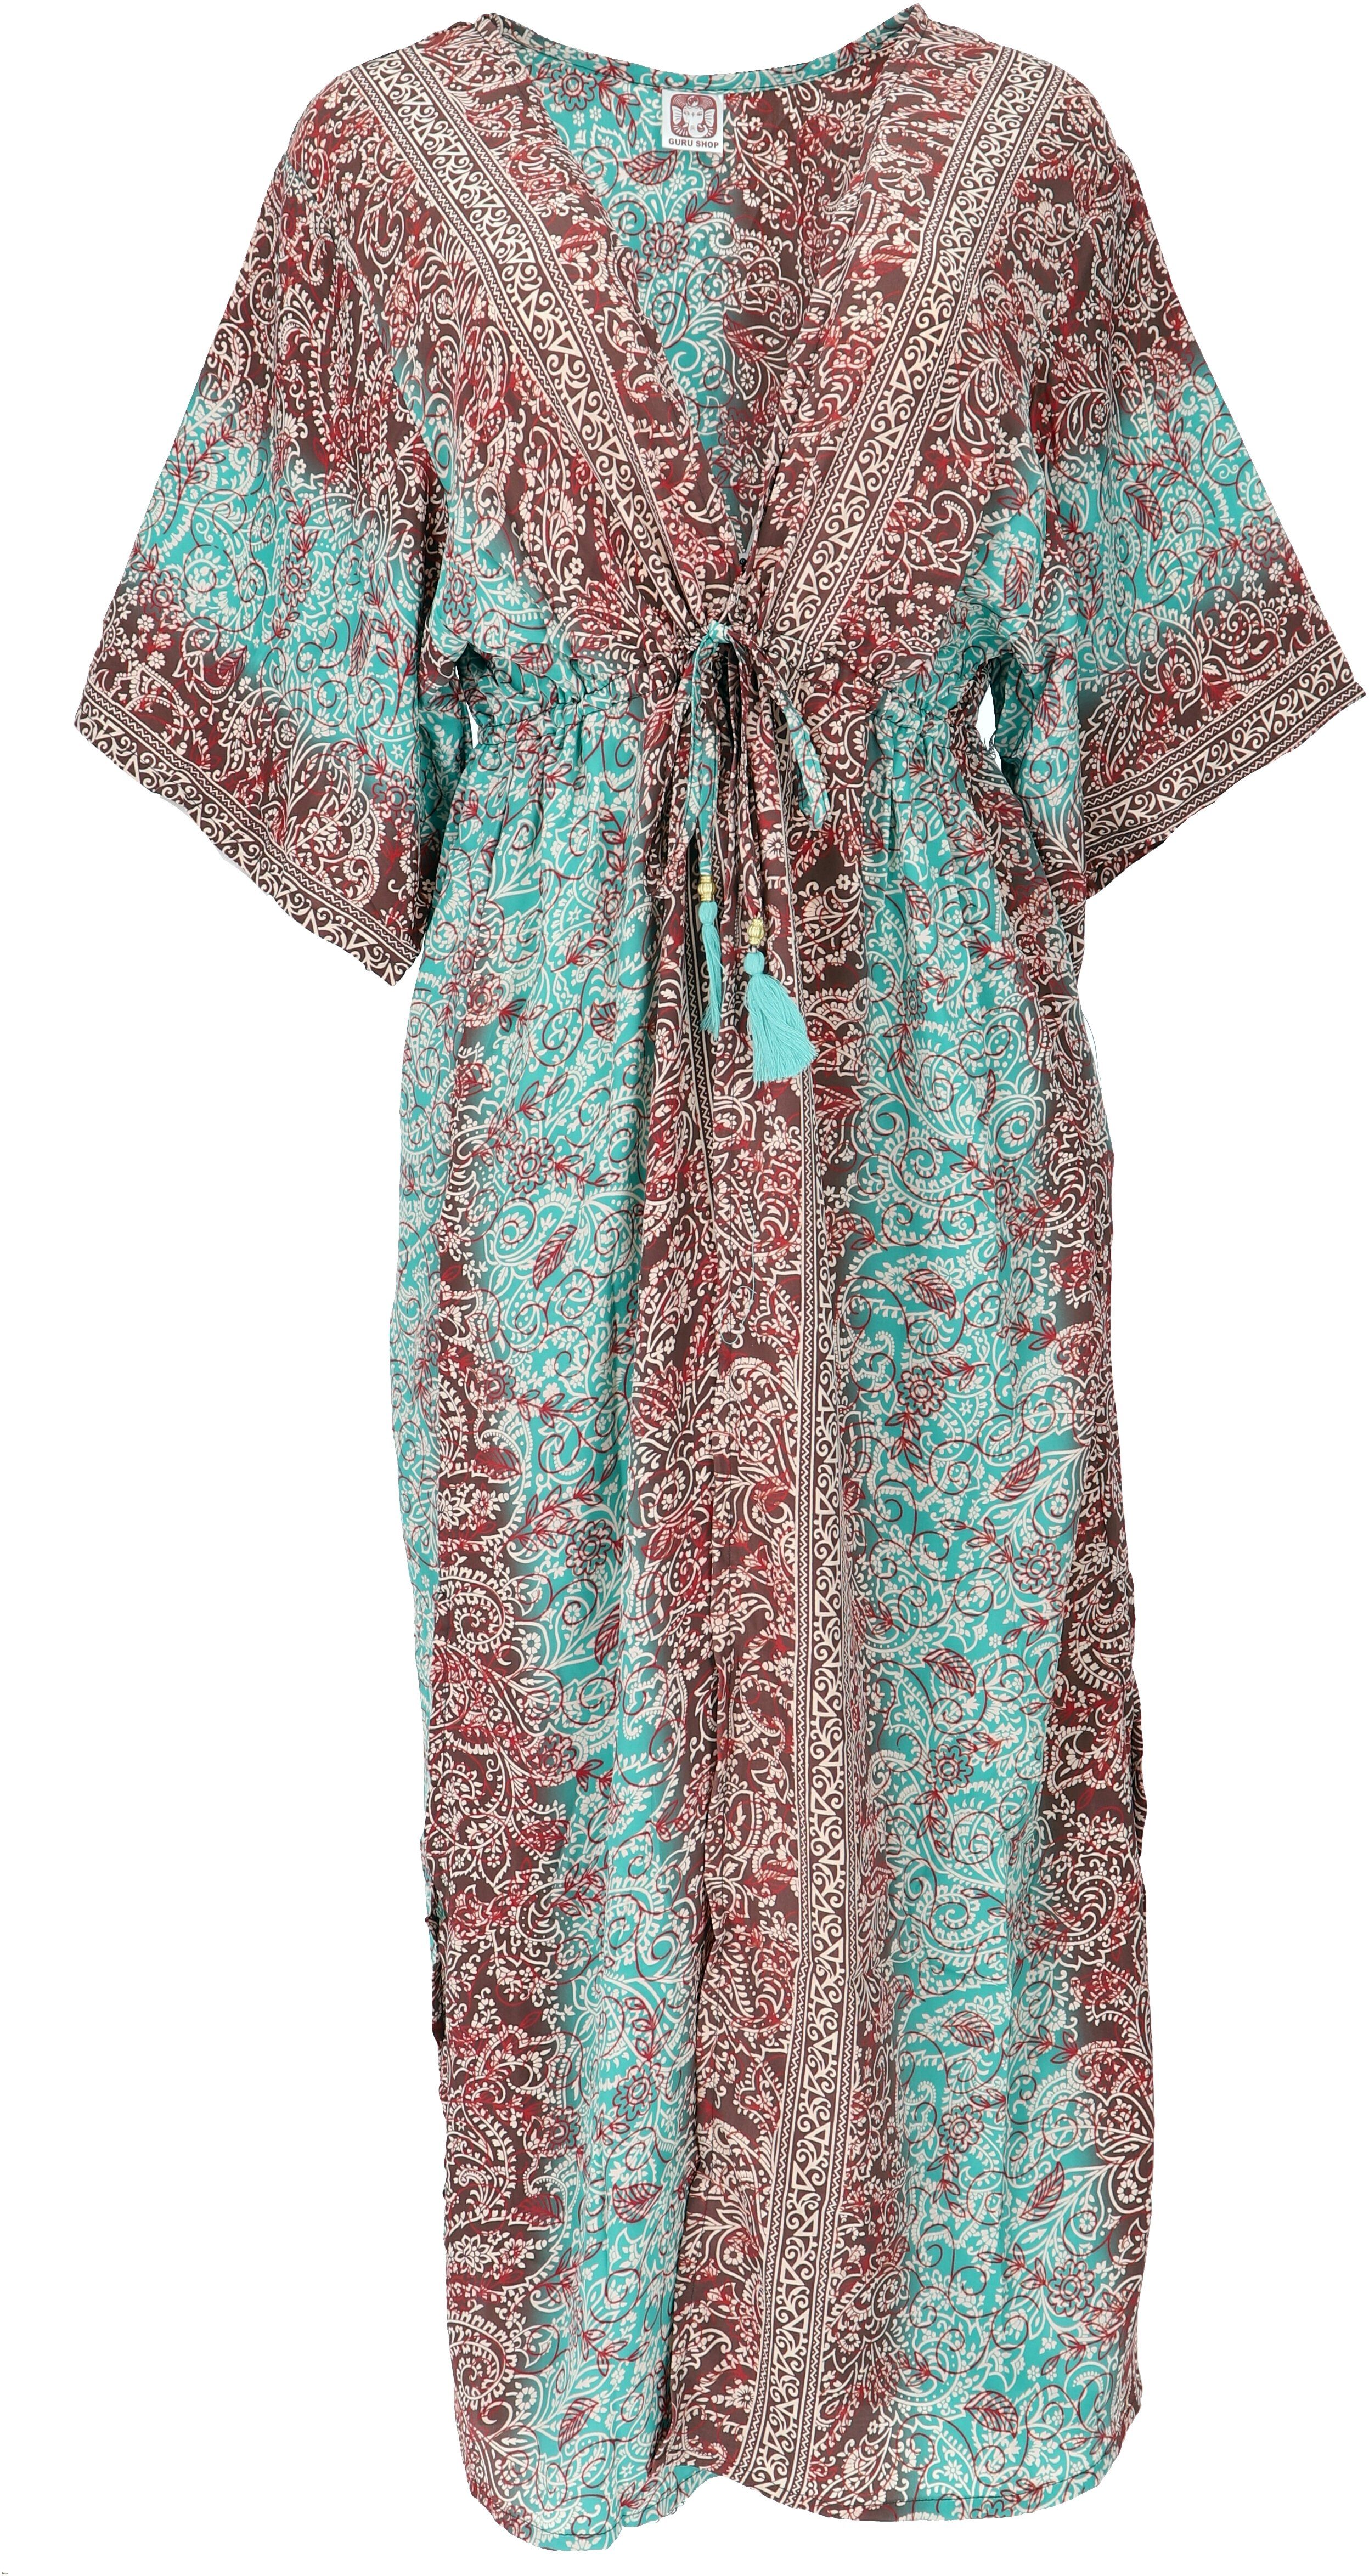 Guru-Shop Kimono Kimonokleid, seidig glänzender Boho Kimono,.., alternative Bekleidung aqua/braun